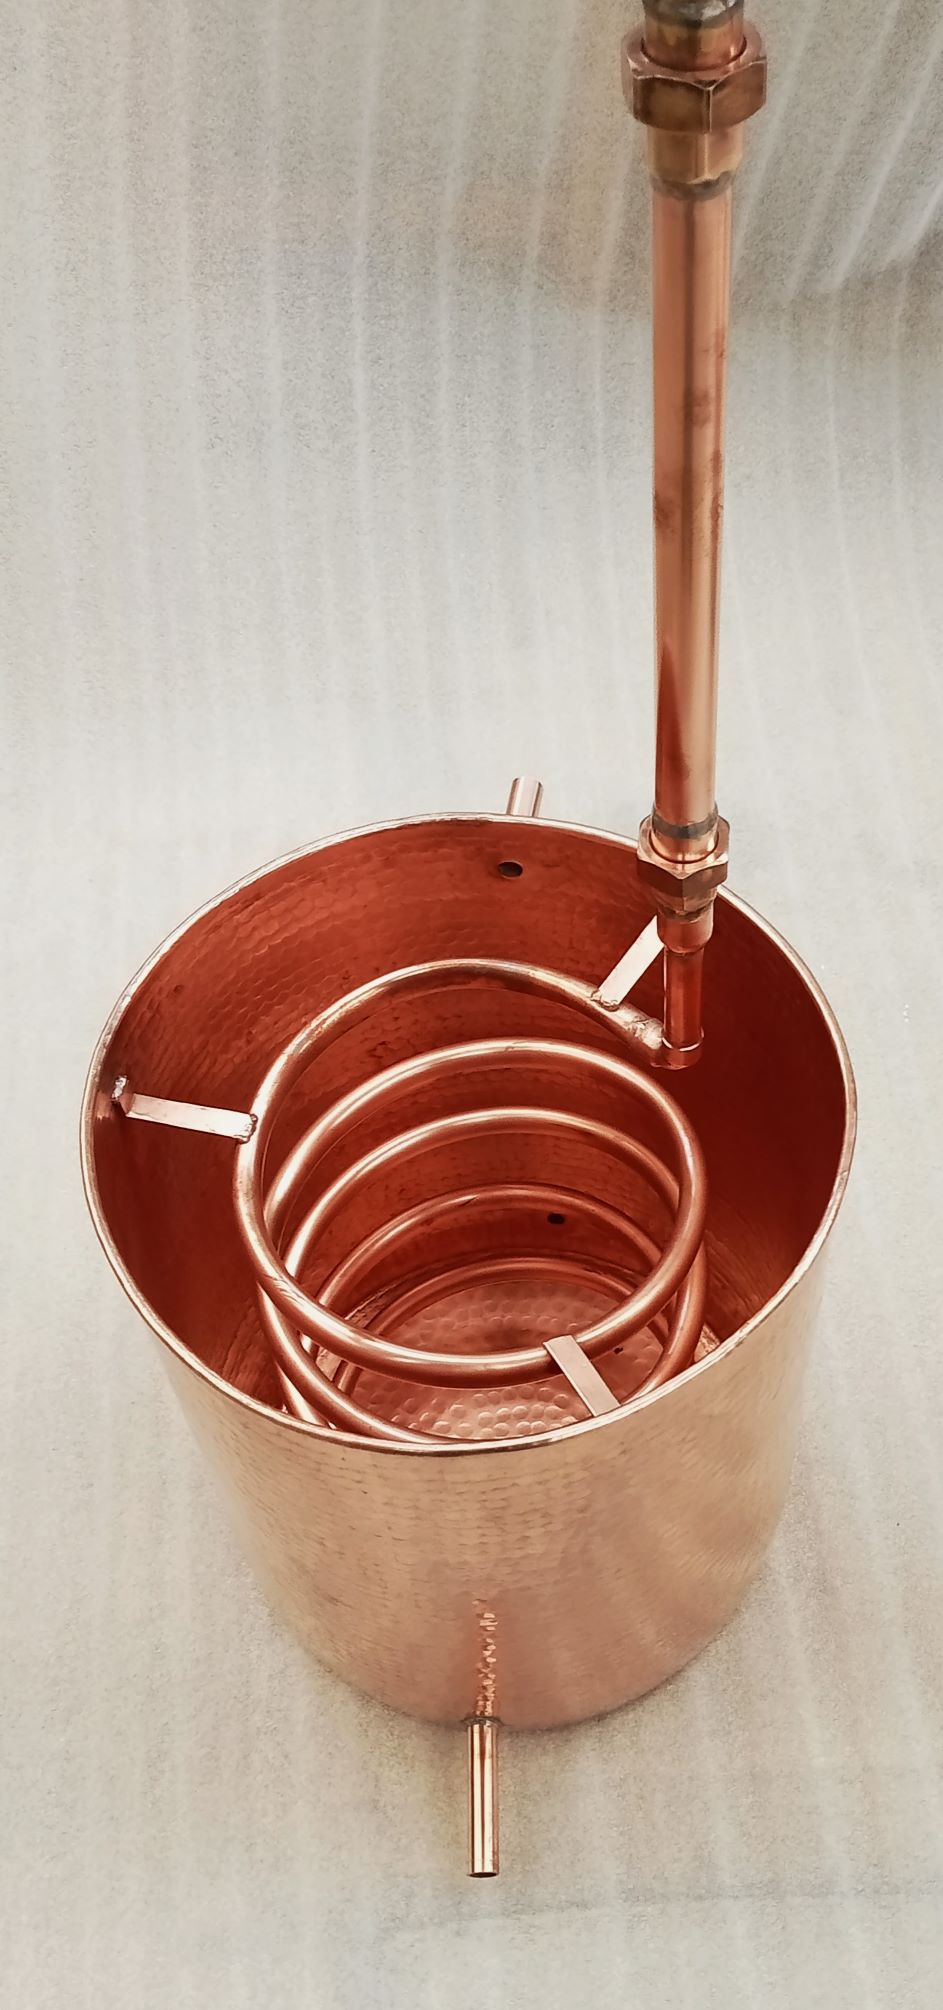 Alambique artesanal de cobre para destilar 150 litros de mezcal tequila aceites esenciales - cobre David Copper